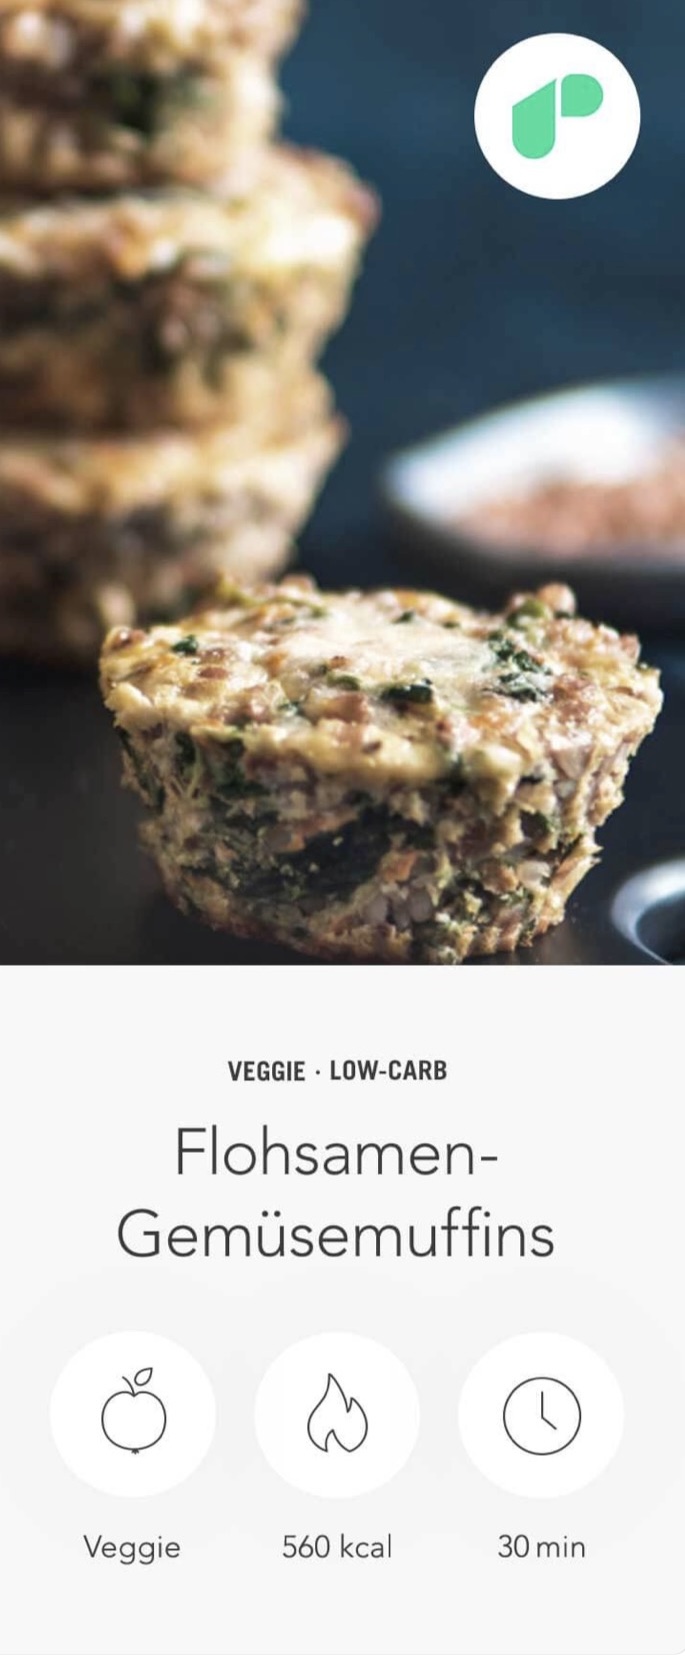 whey-protein-flohsamen-muffins